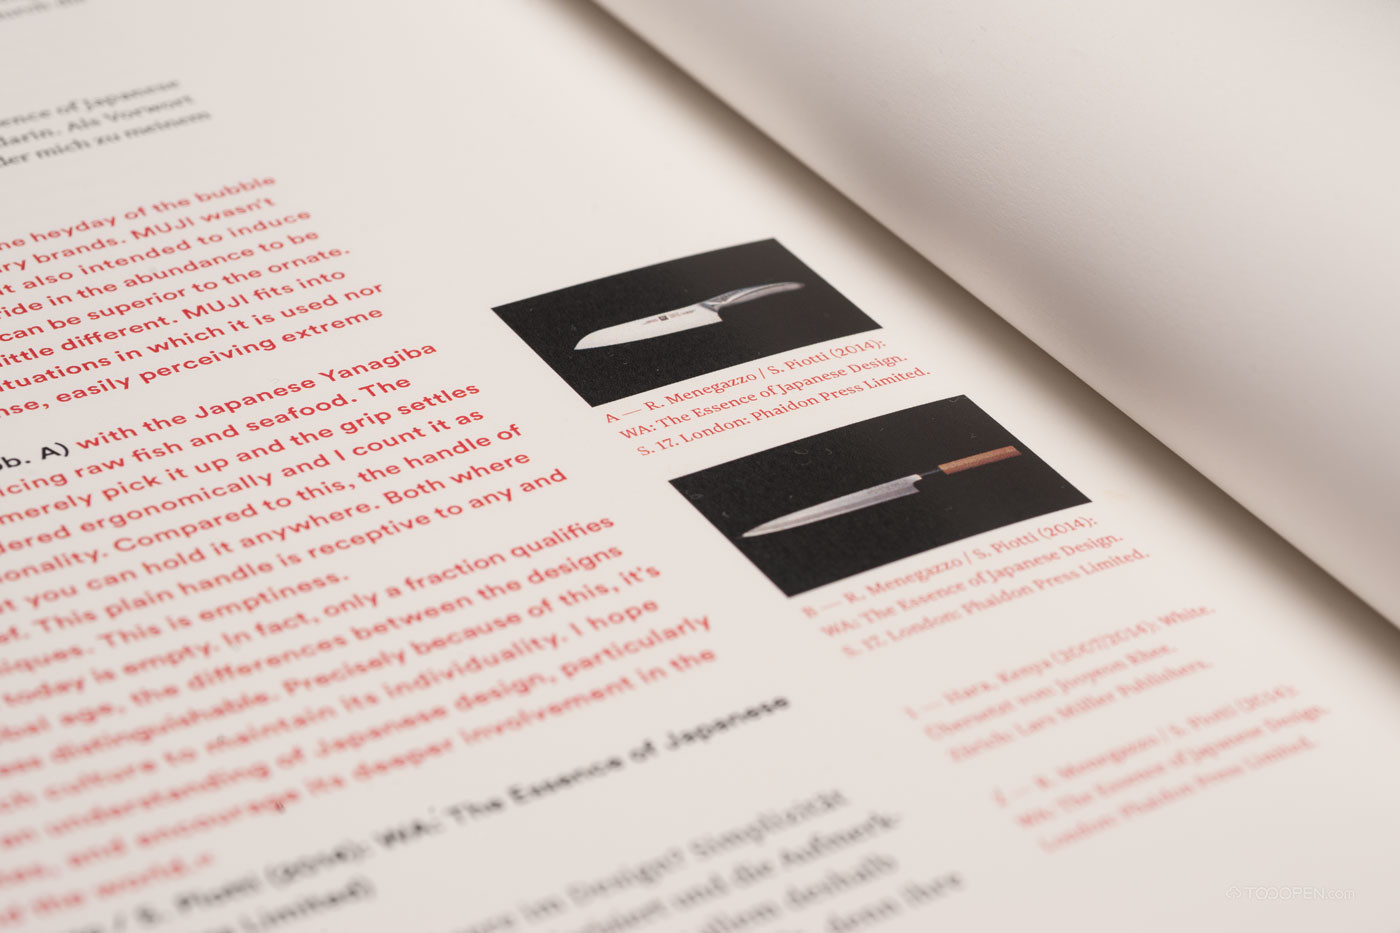 日式刀具品牌线装书籍设计欣赏-08